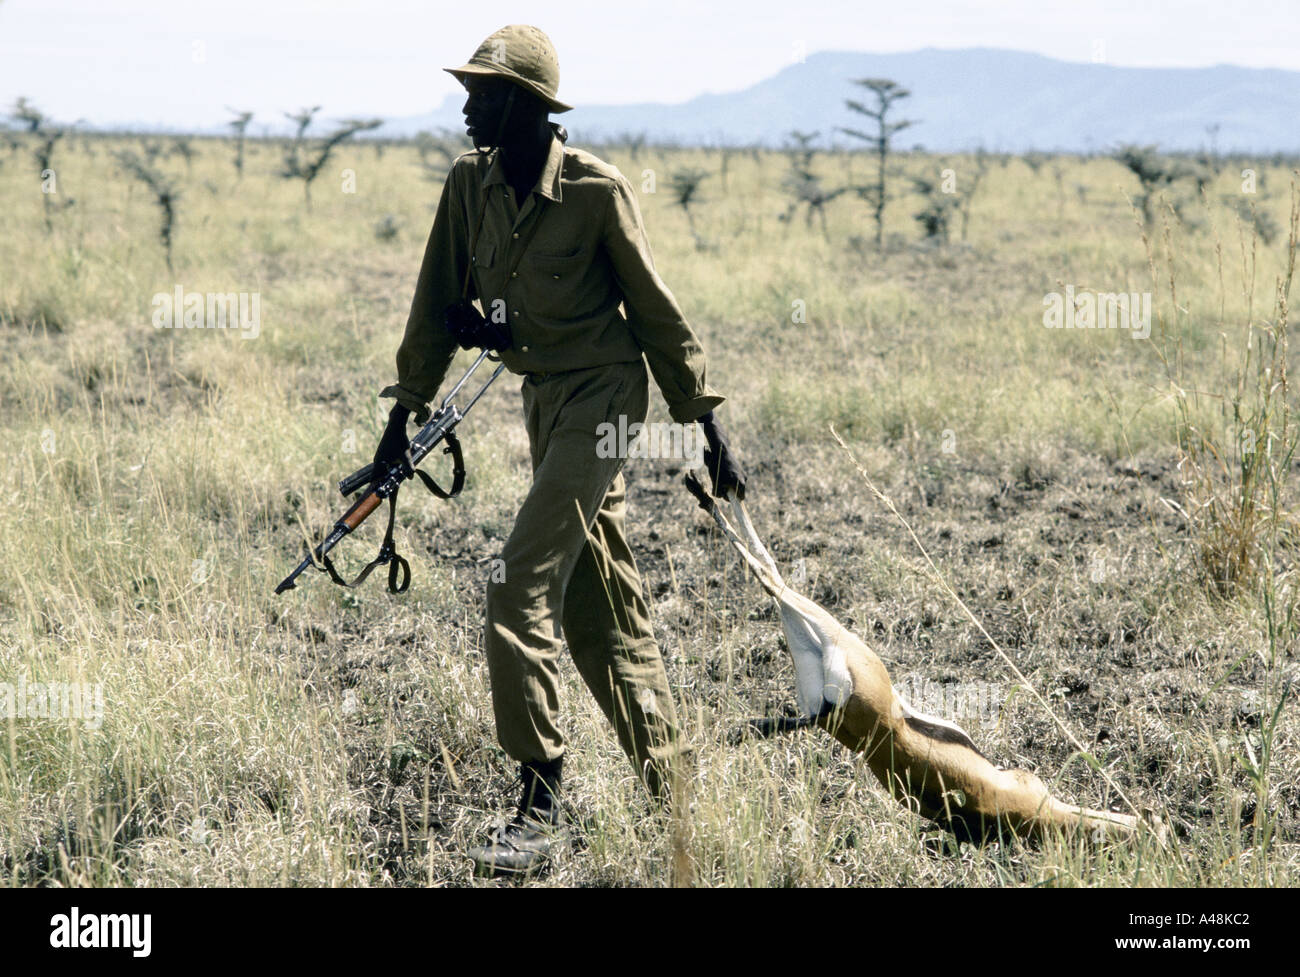 Soldat de l'armée de libération du Soudan avec une antilope morts après une expédition de chasse Banque D'Images